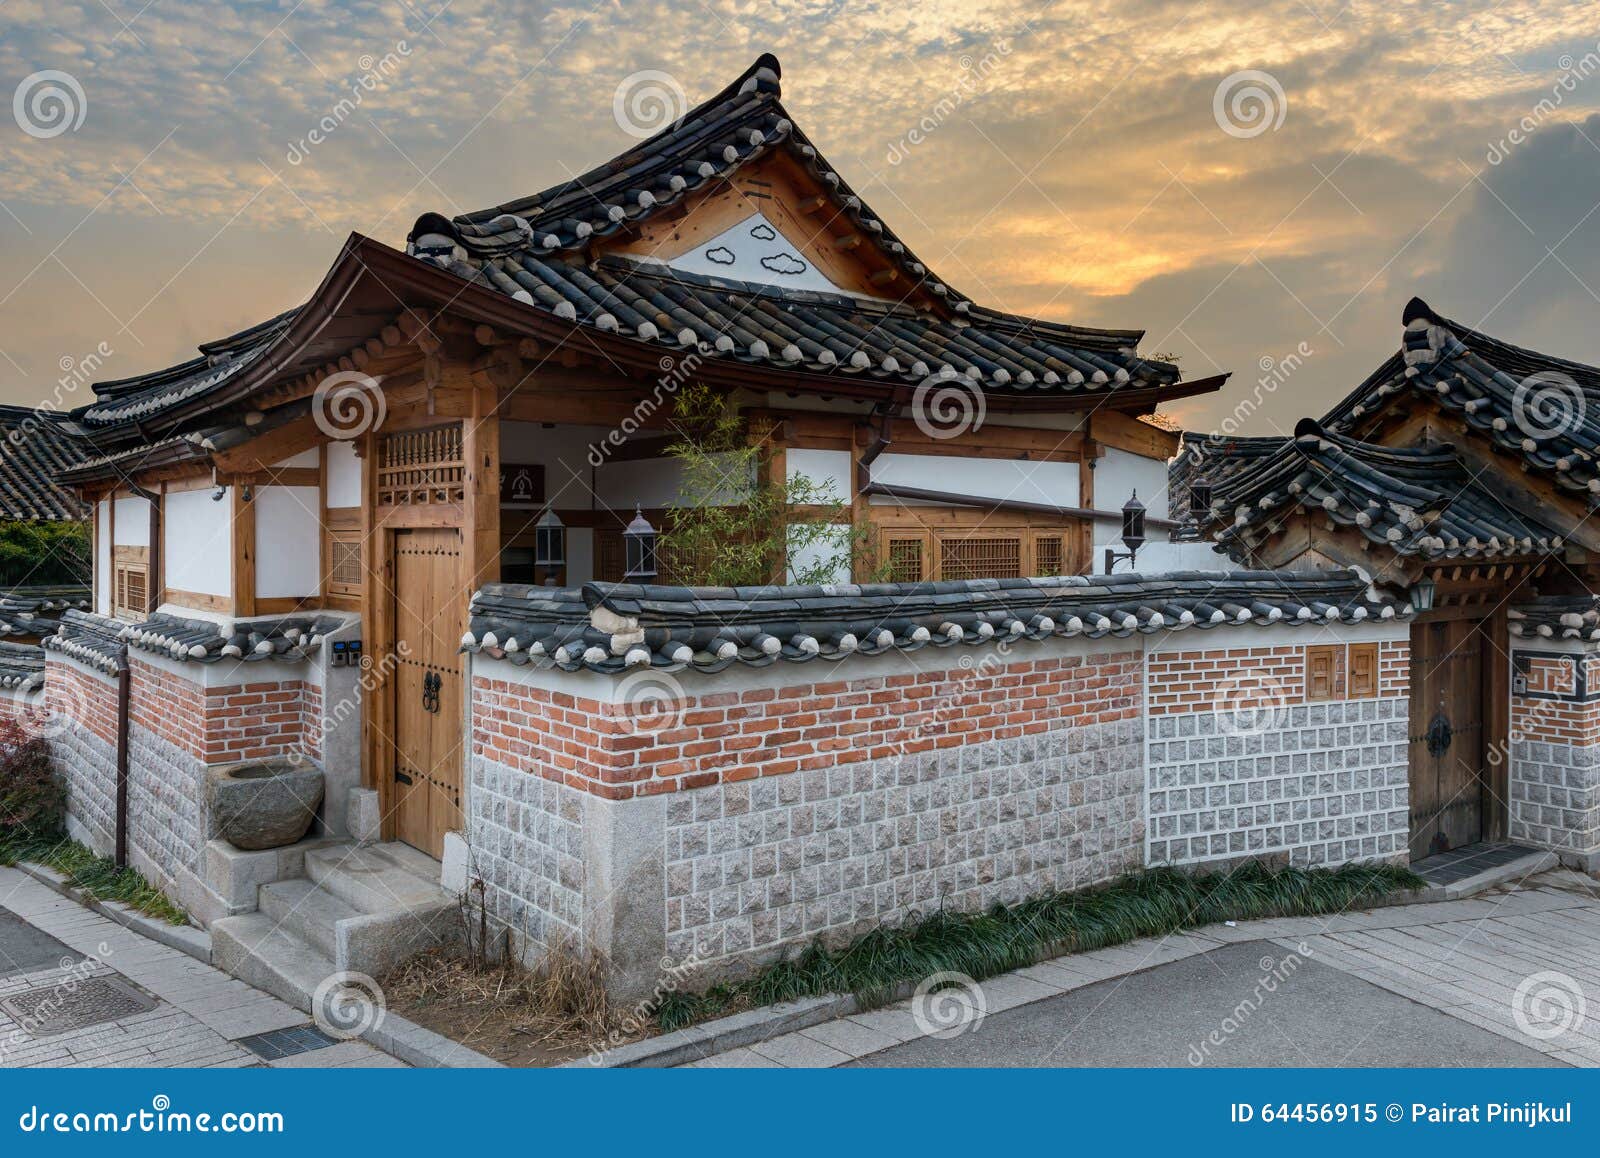 亲密“有”间——韩国“一家两户”住宅 | 建筑学院